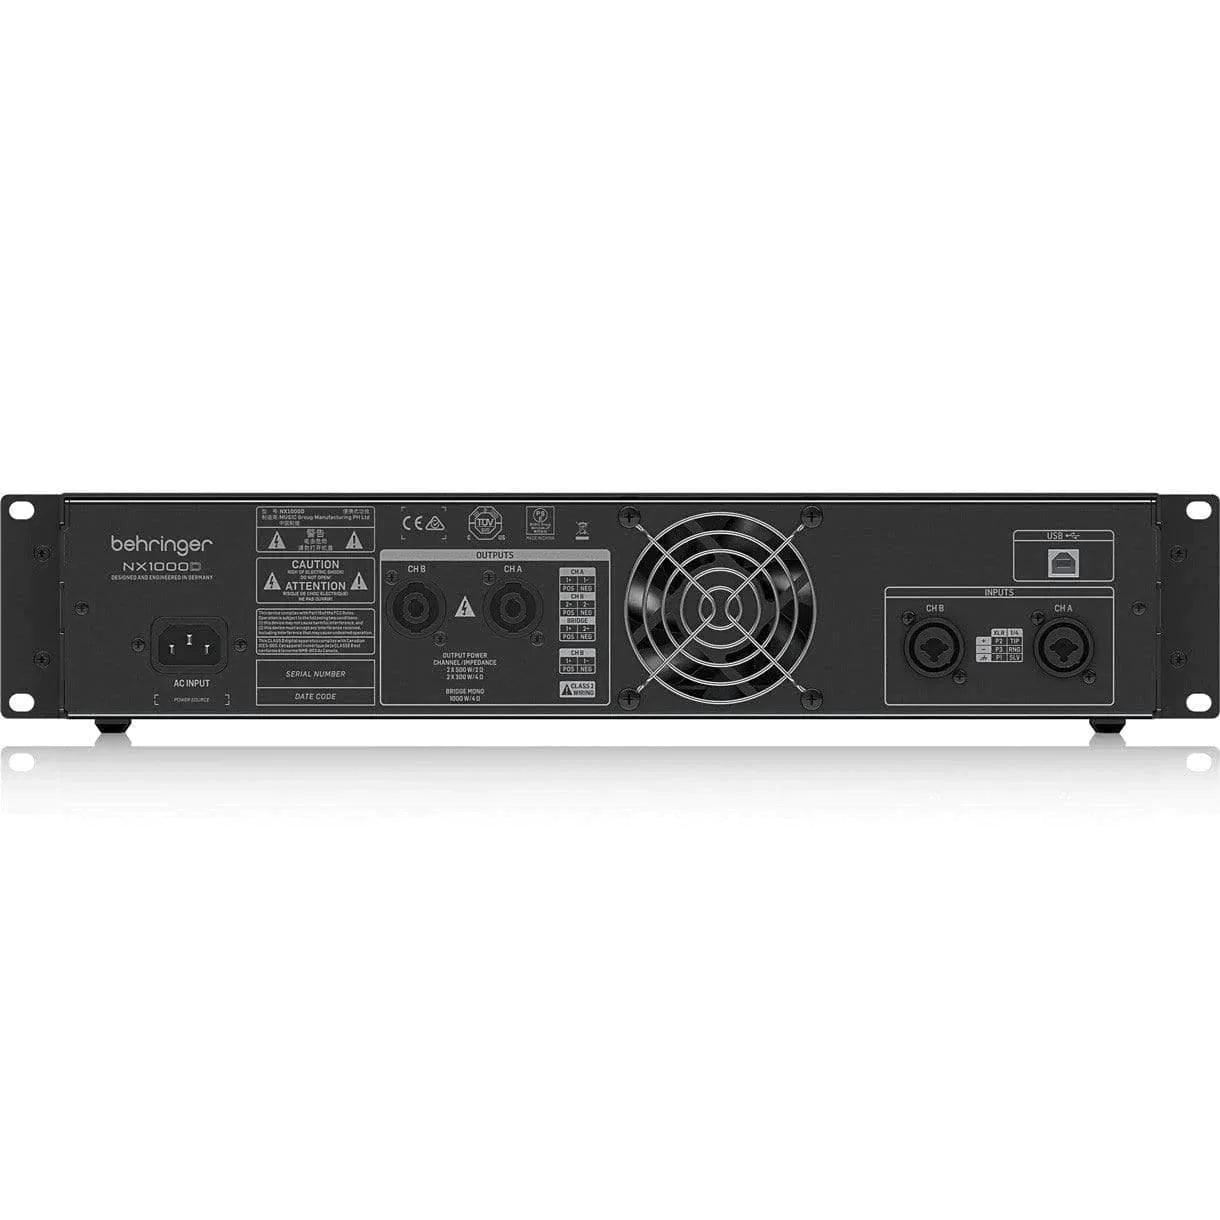 Behringer NX1000D Ultra-Lightweight Class-D Power Amplifier